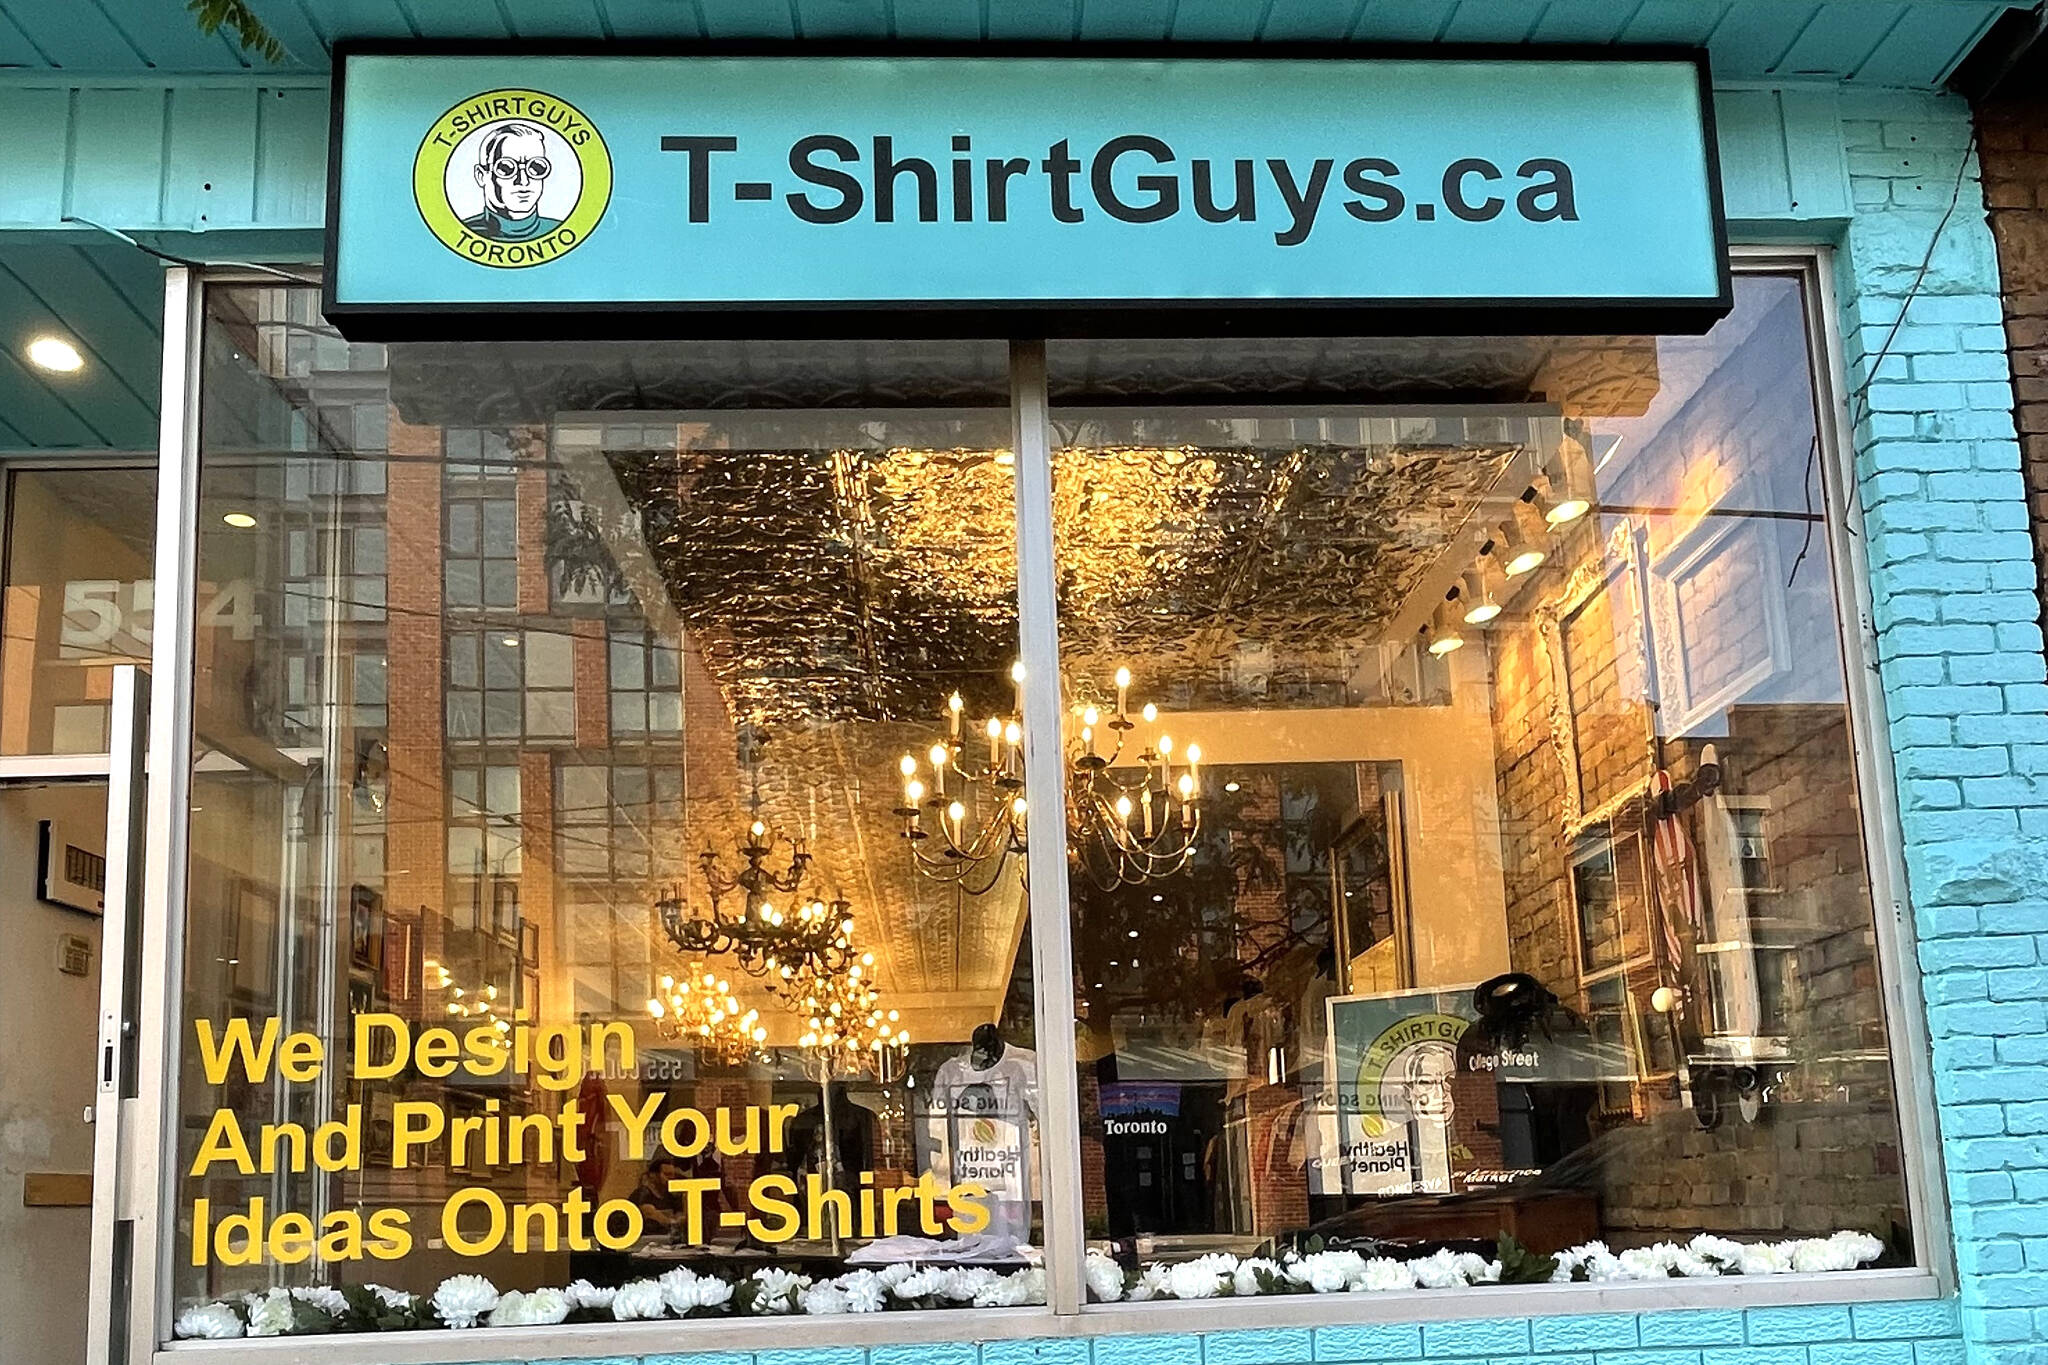 The T-Shirt Guys